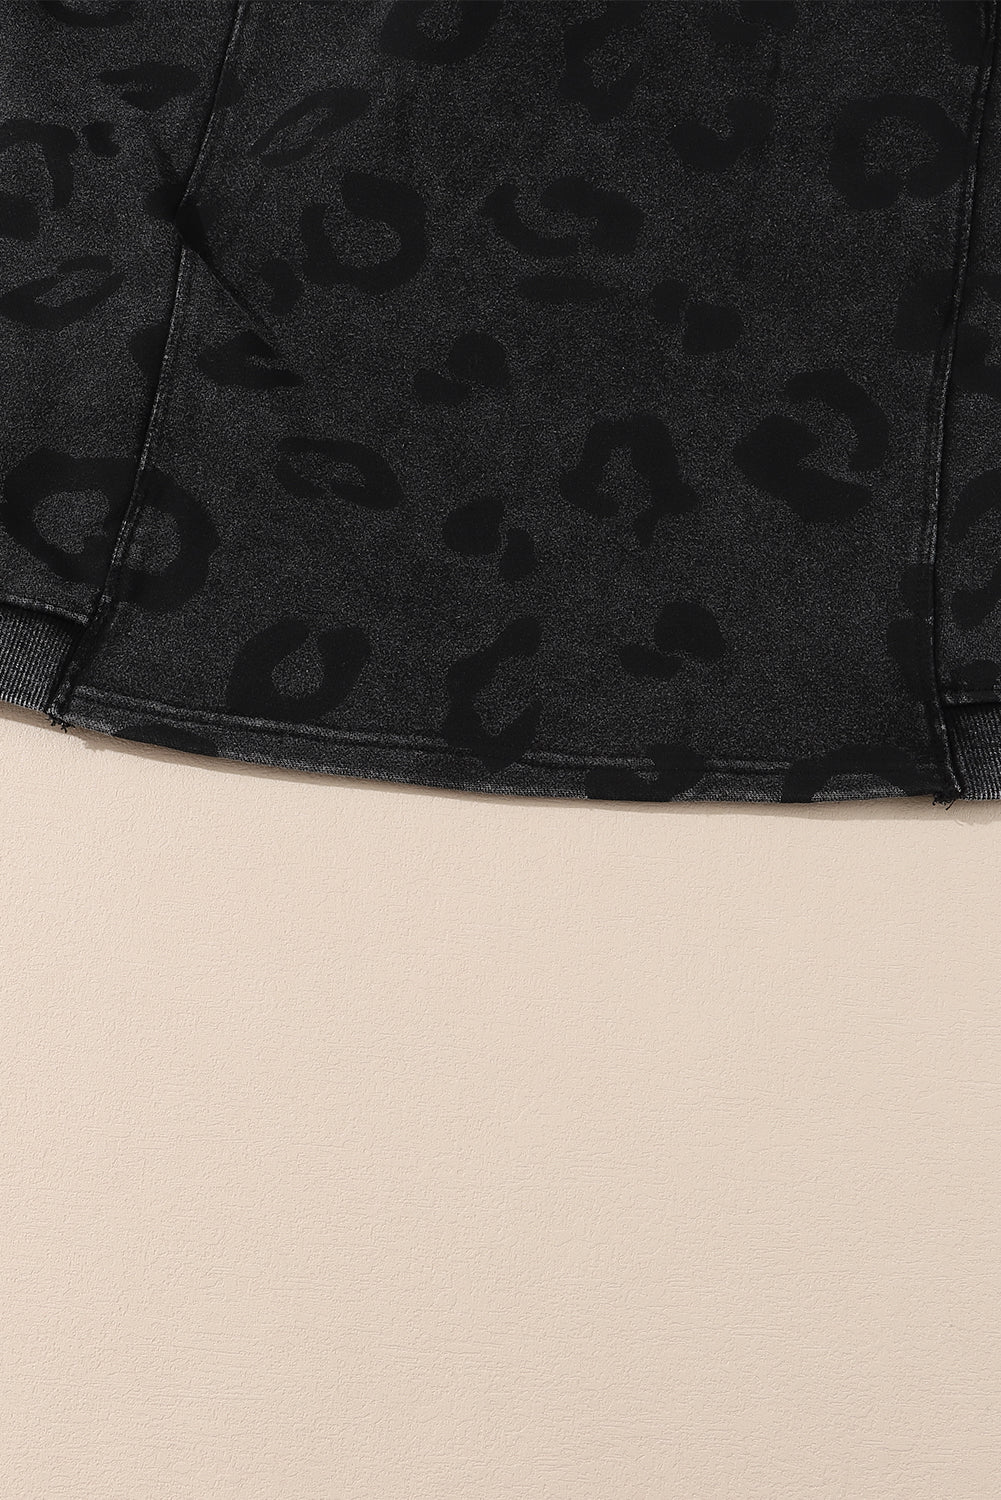 Pulover z ohlapnim krojem in leopardjim vzorcem karbonsko sive barve